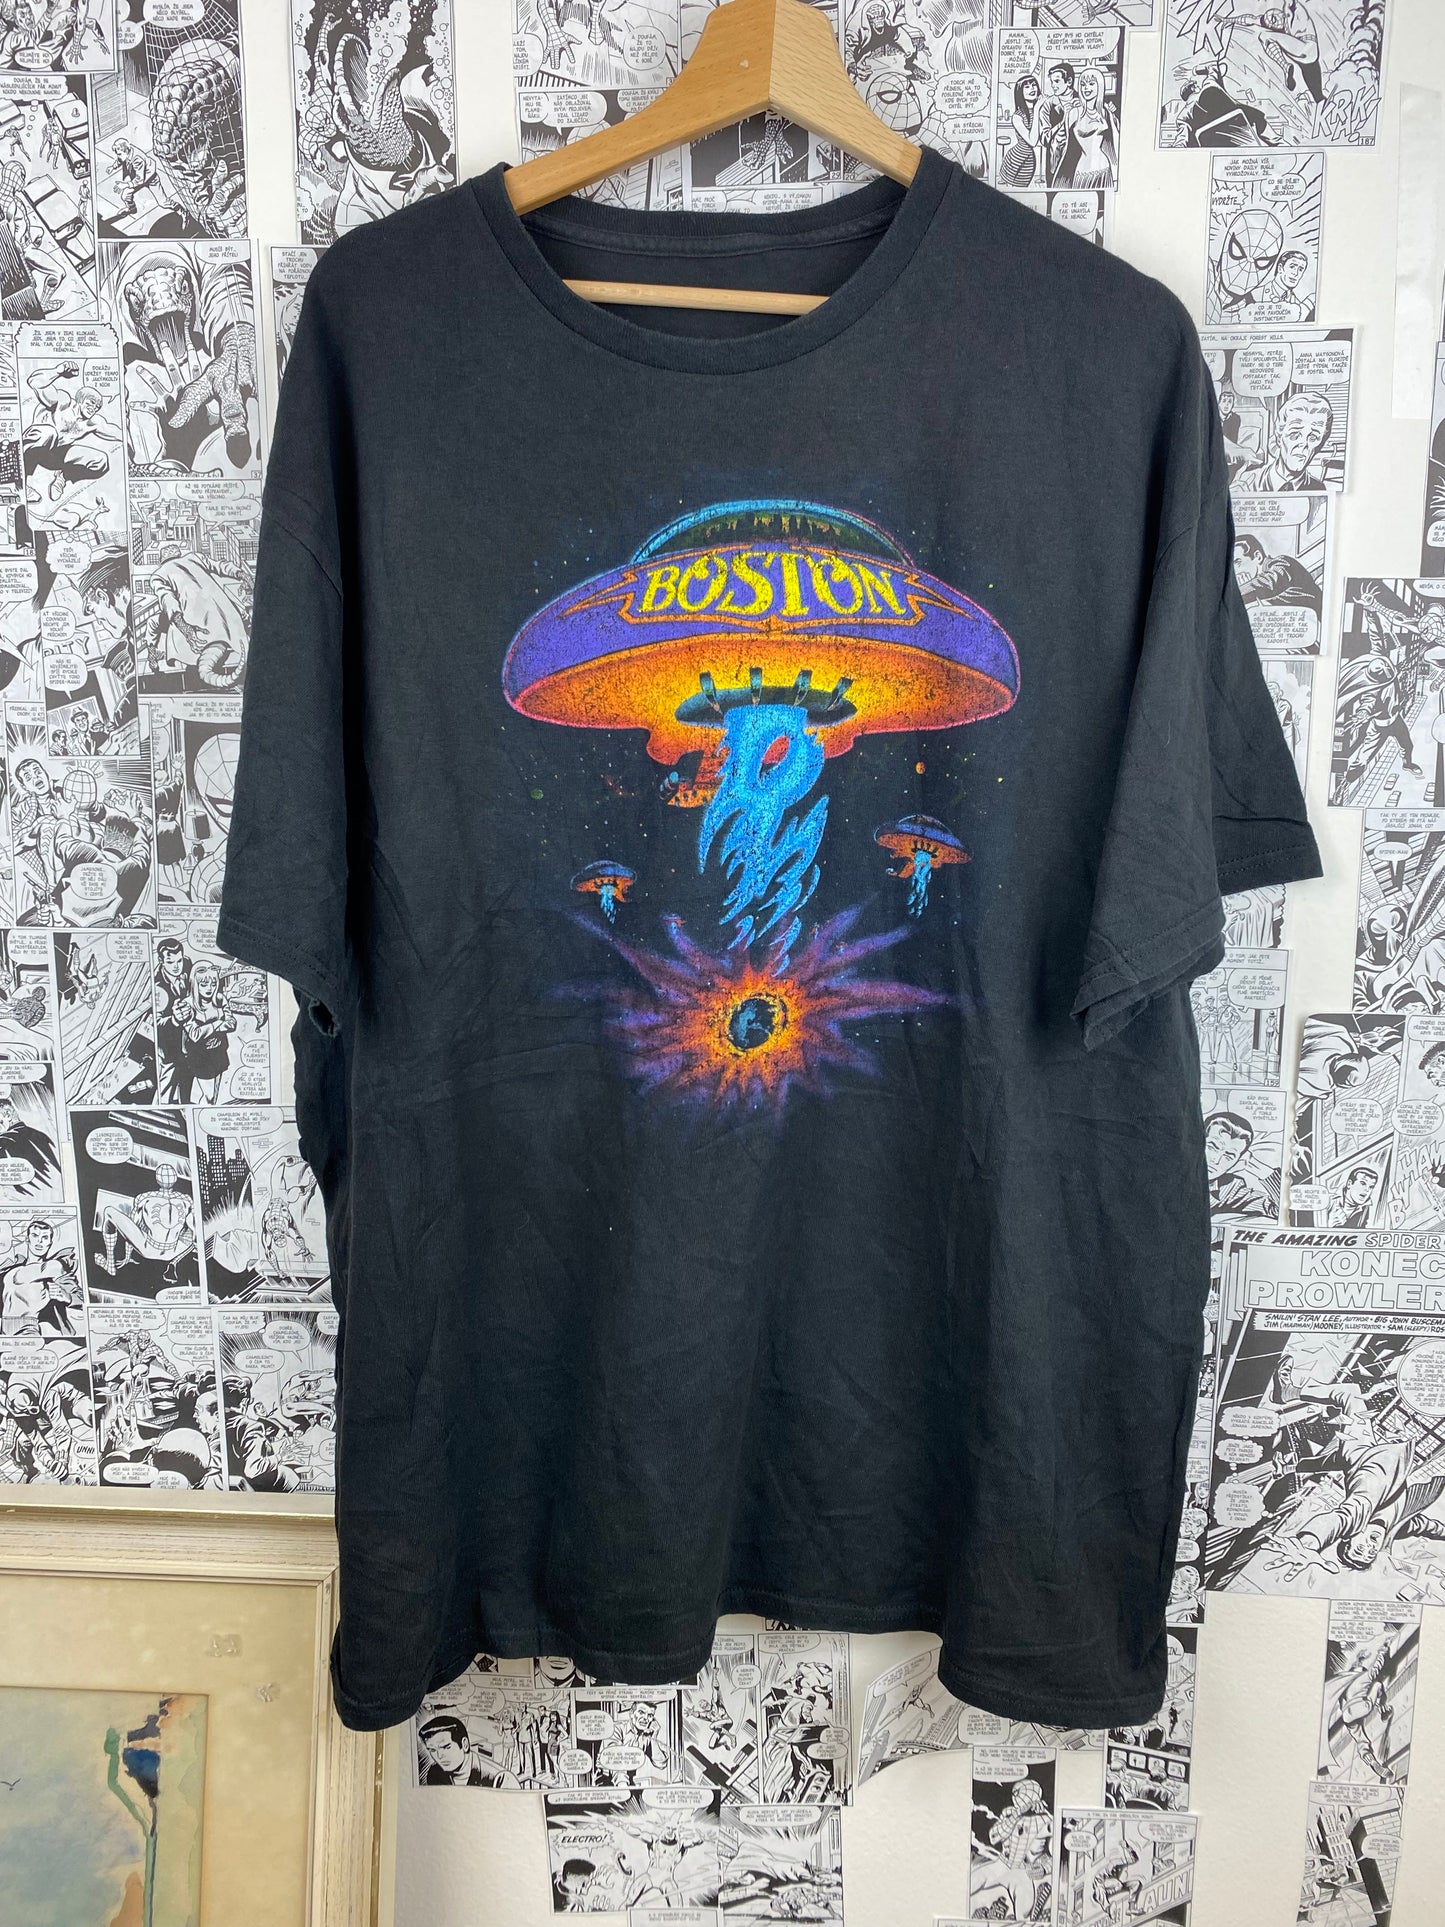 Vintage Boston t-shirt - size XL